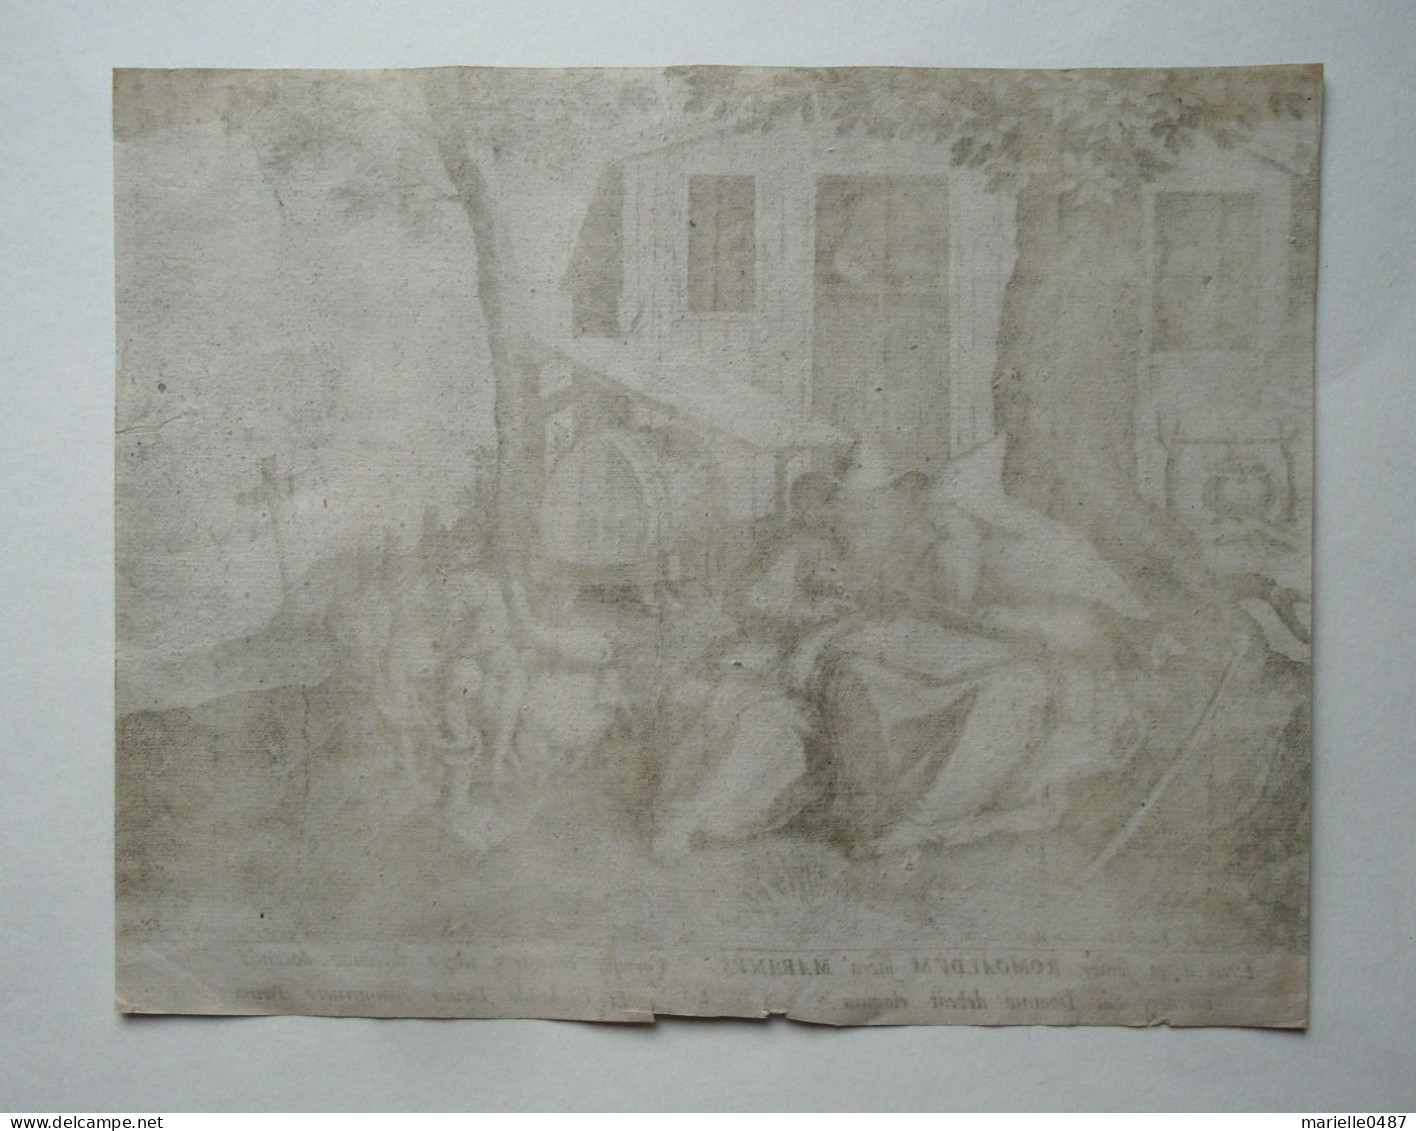 Martin De VOs - Sadeler - 1598 - Trophaeum Vitae Solitariae - Estampas & Grabados